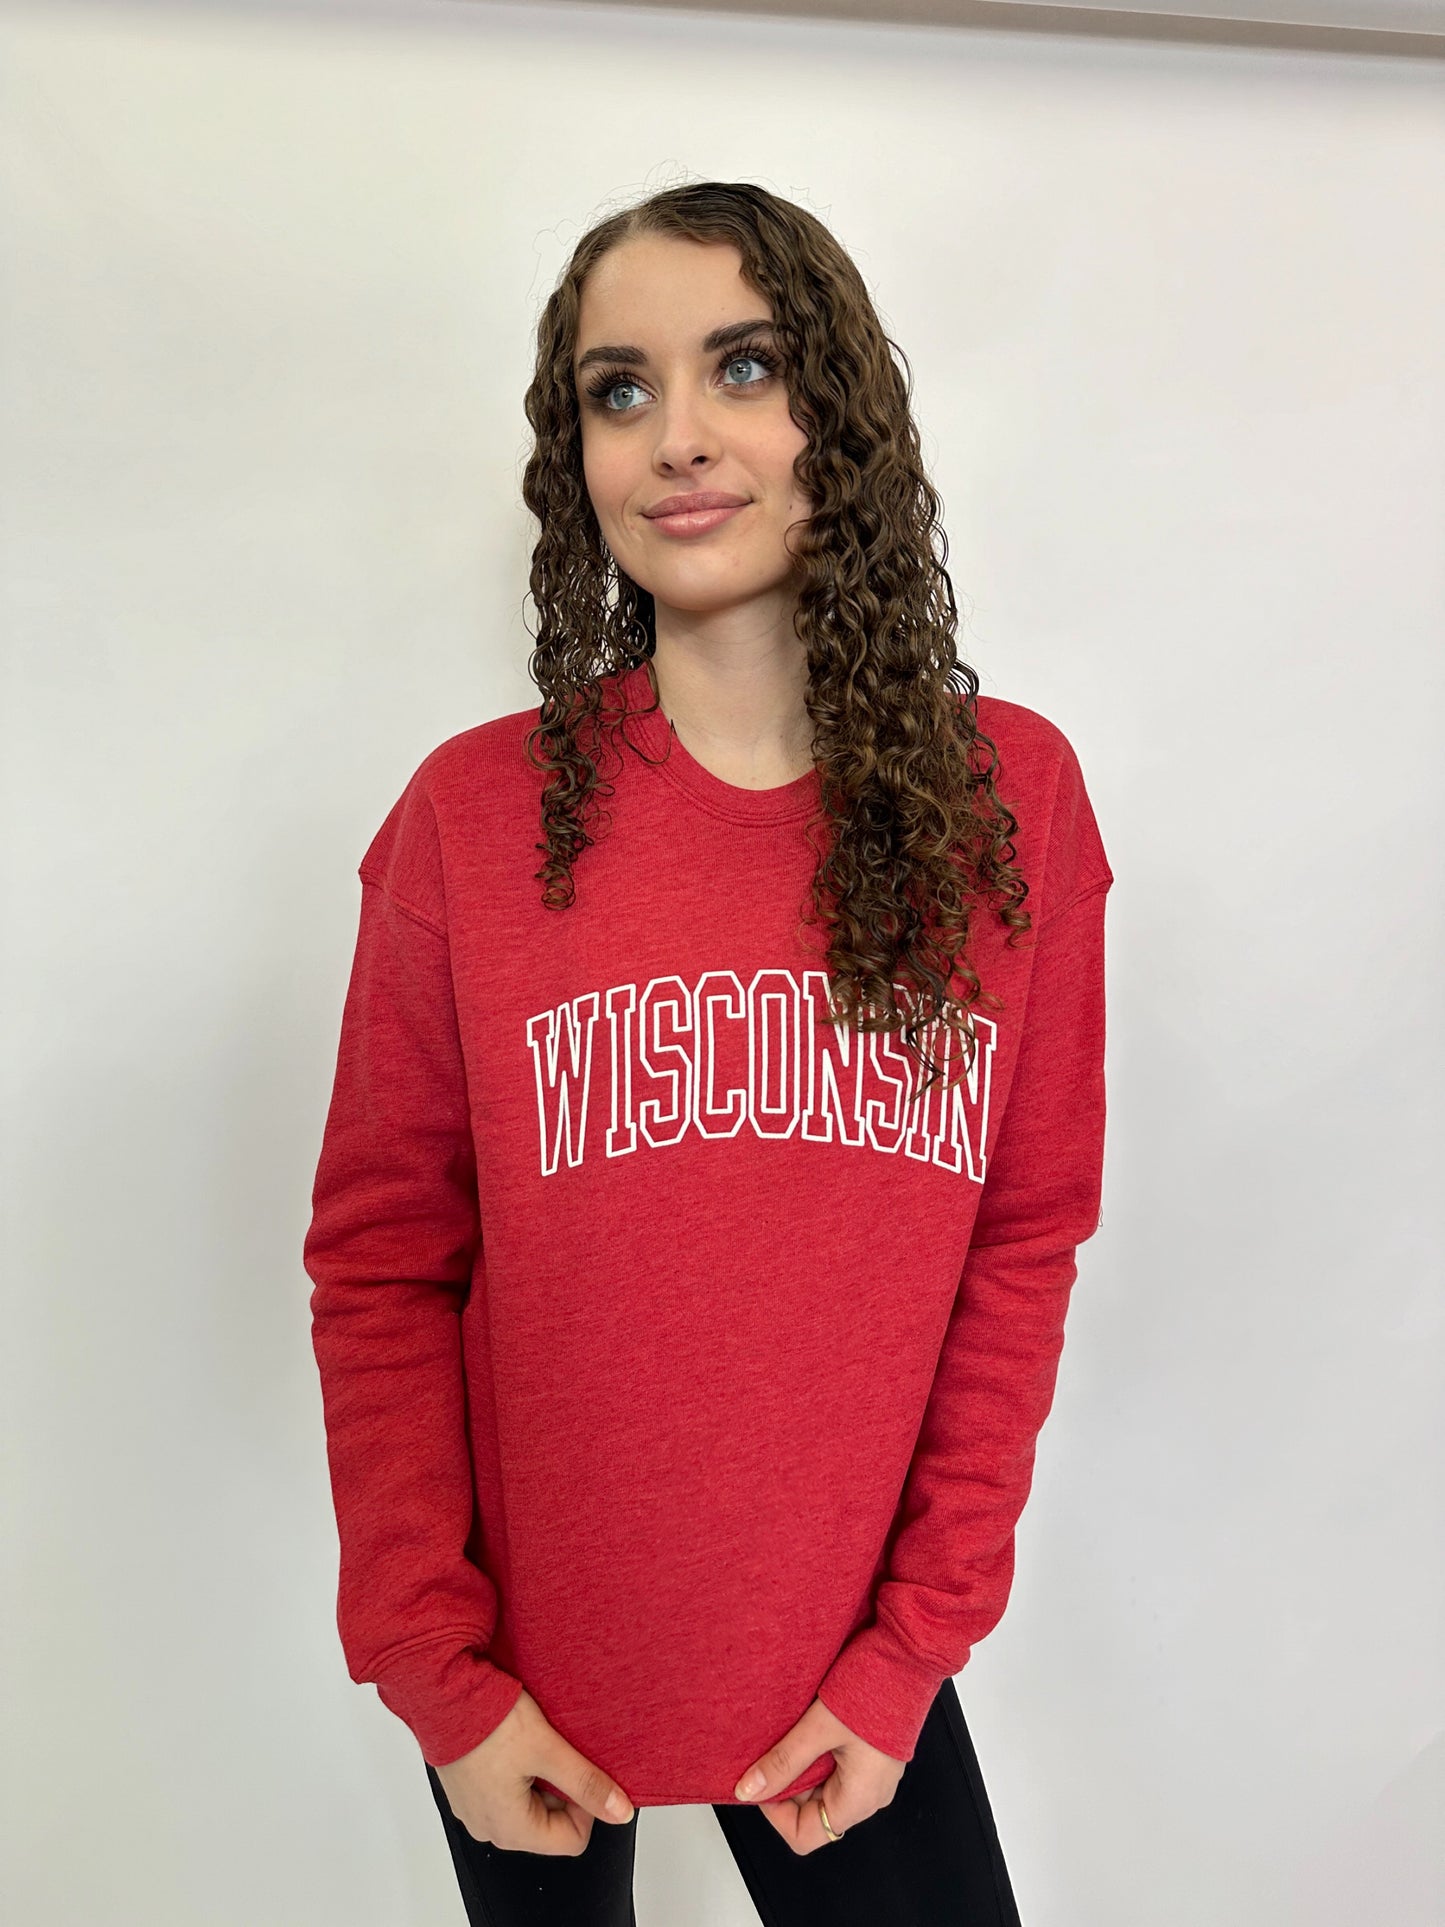 Wisconsin Sweatshirt - 6 Colors